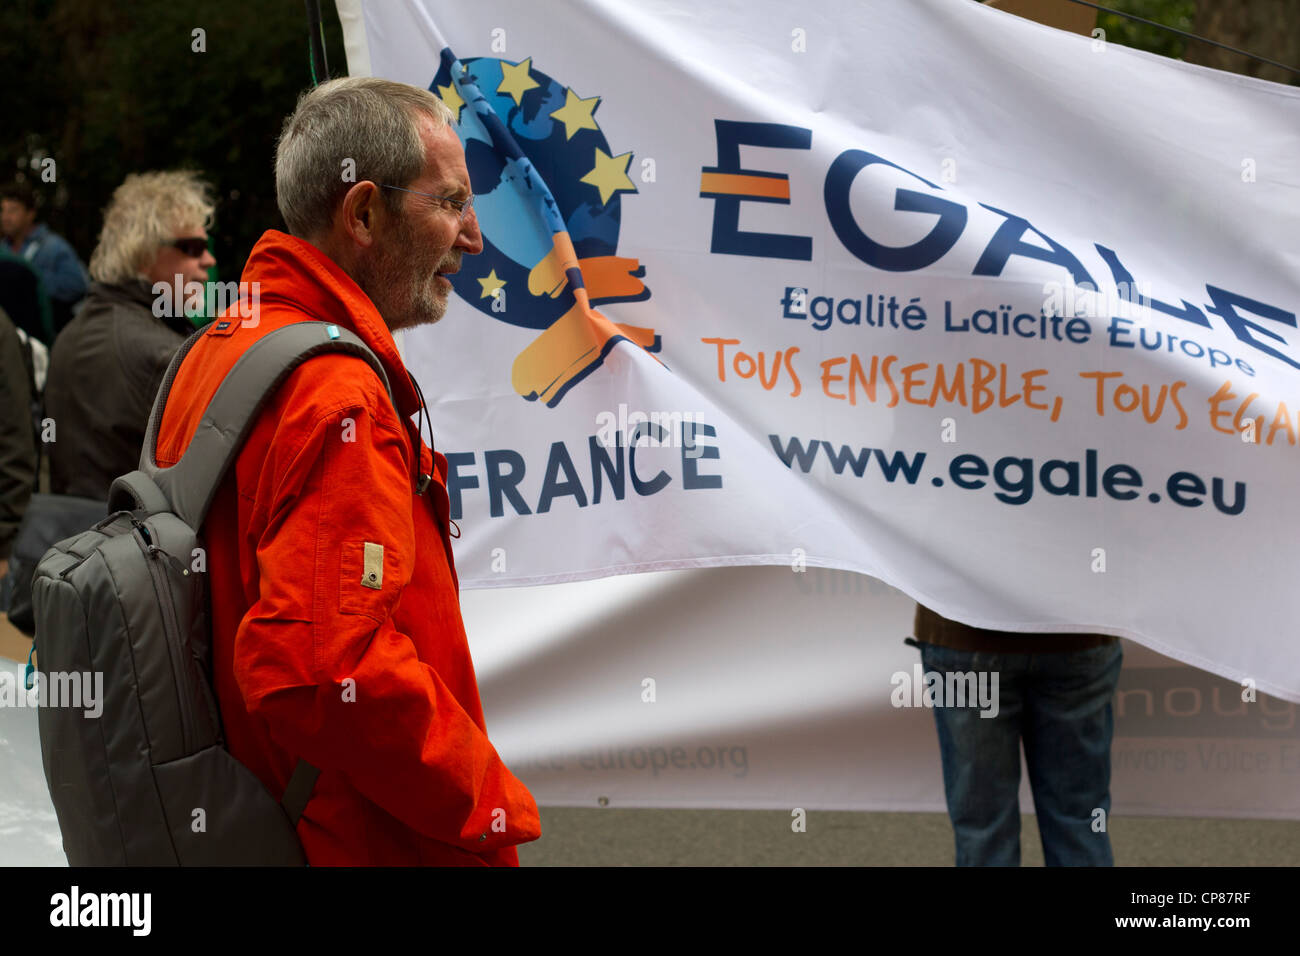 Französische Fans auf das säkulare Europa März, London, September 2011. Stockfoto